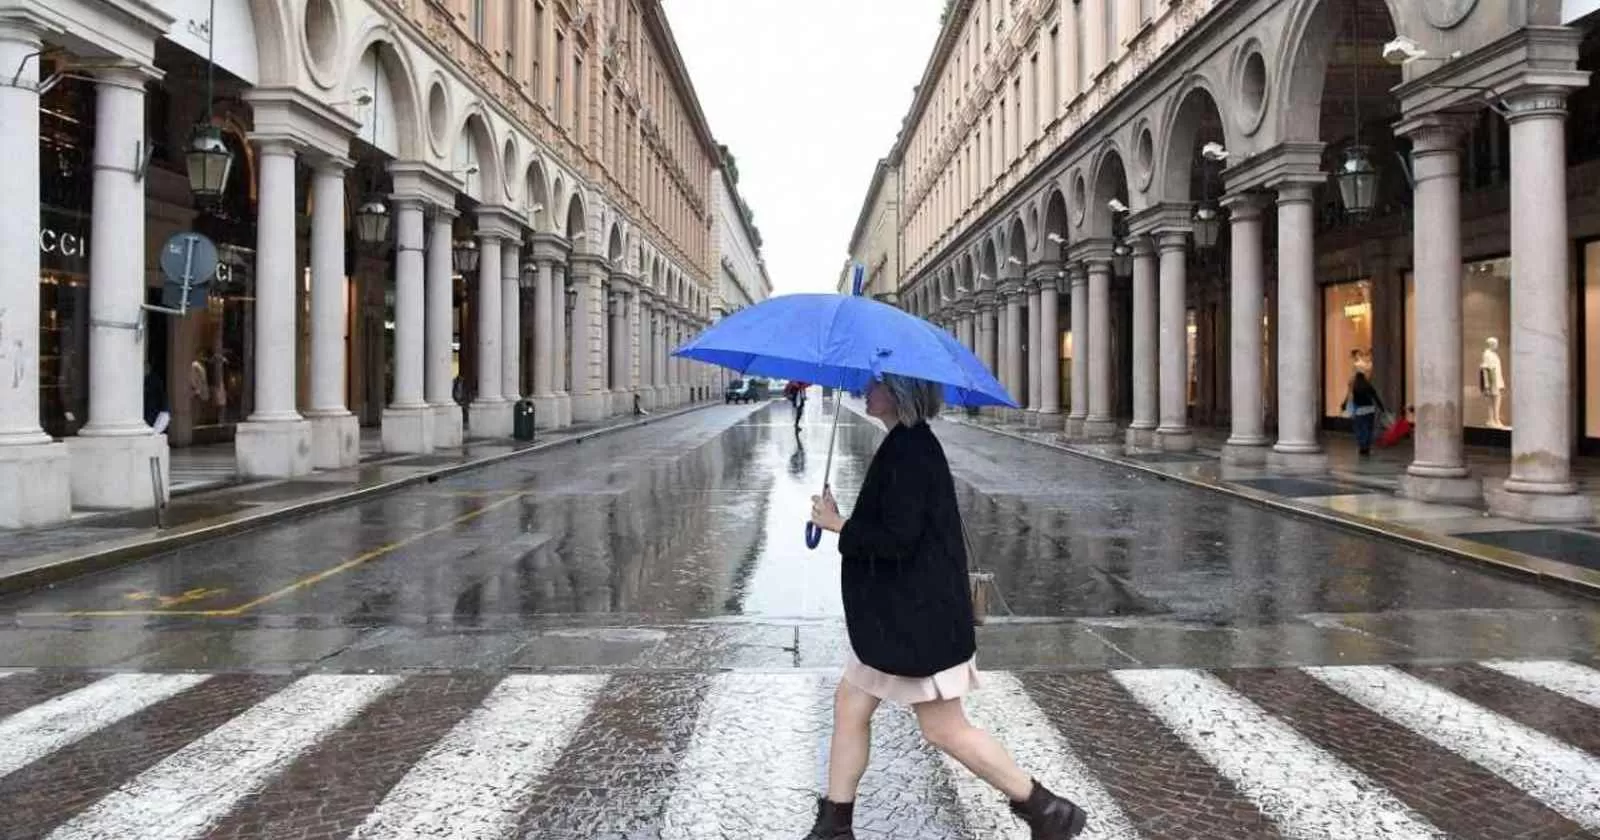 ragazza sotto la pioggia con ombrello blu